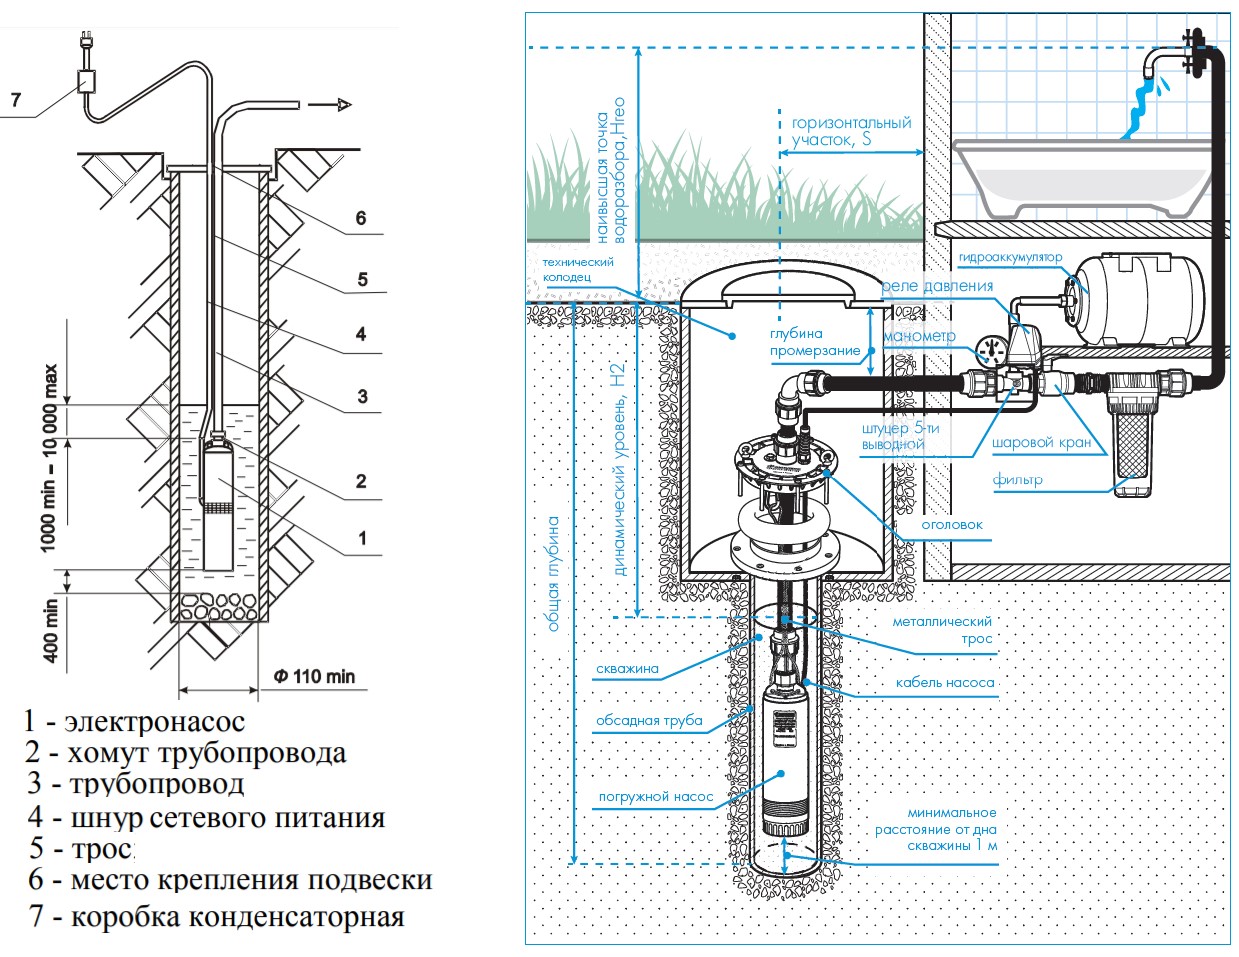 Погружной насос для скважины Водолей — параметры, конструкция и ремонт